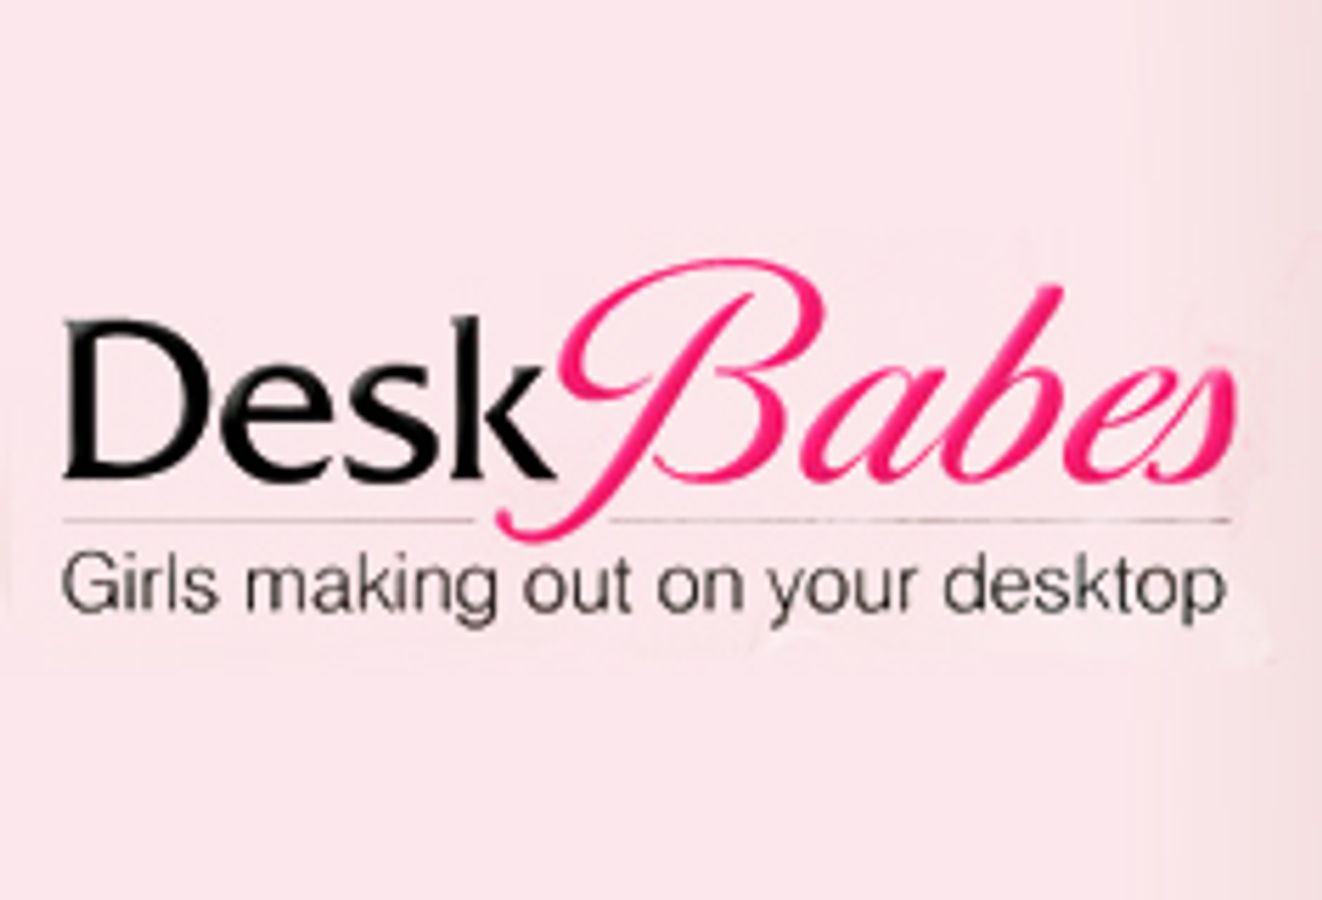 DeskBabes